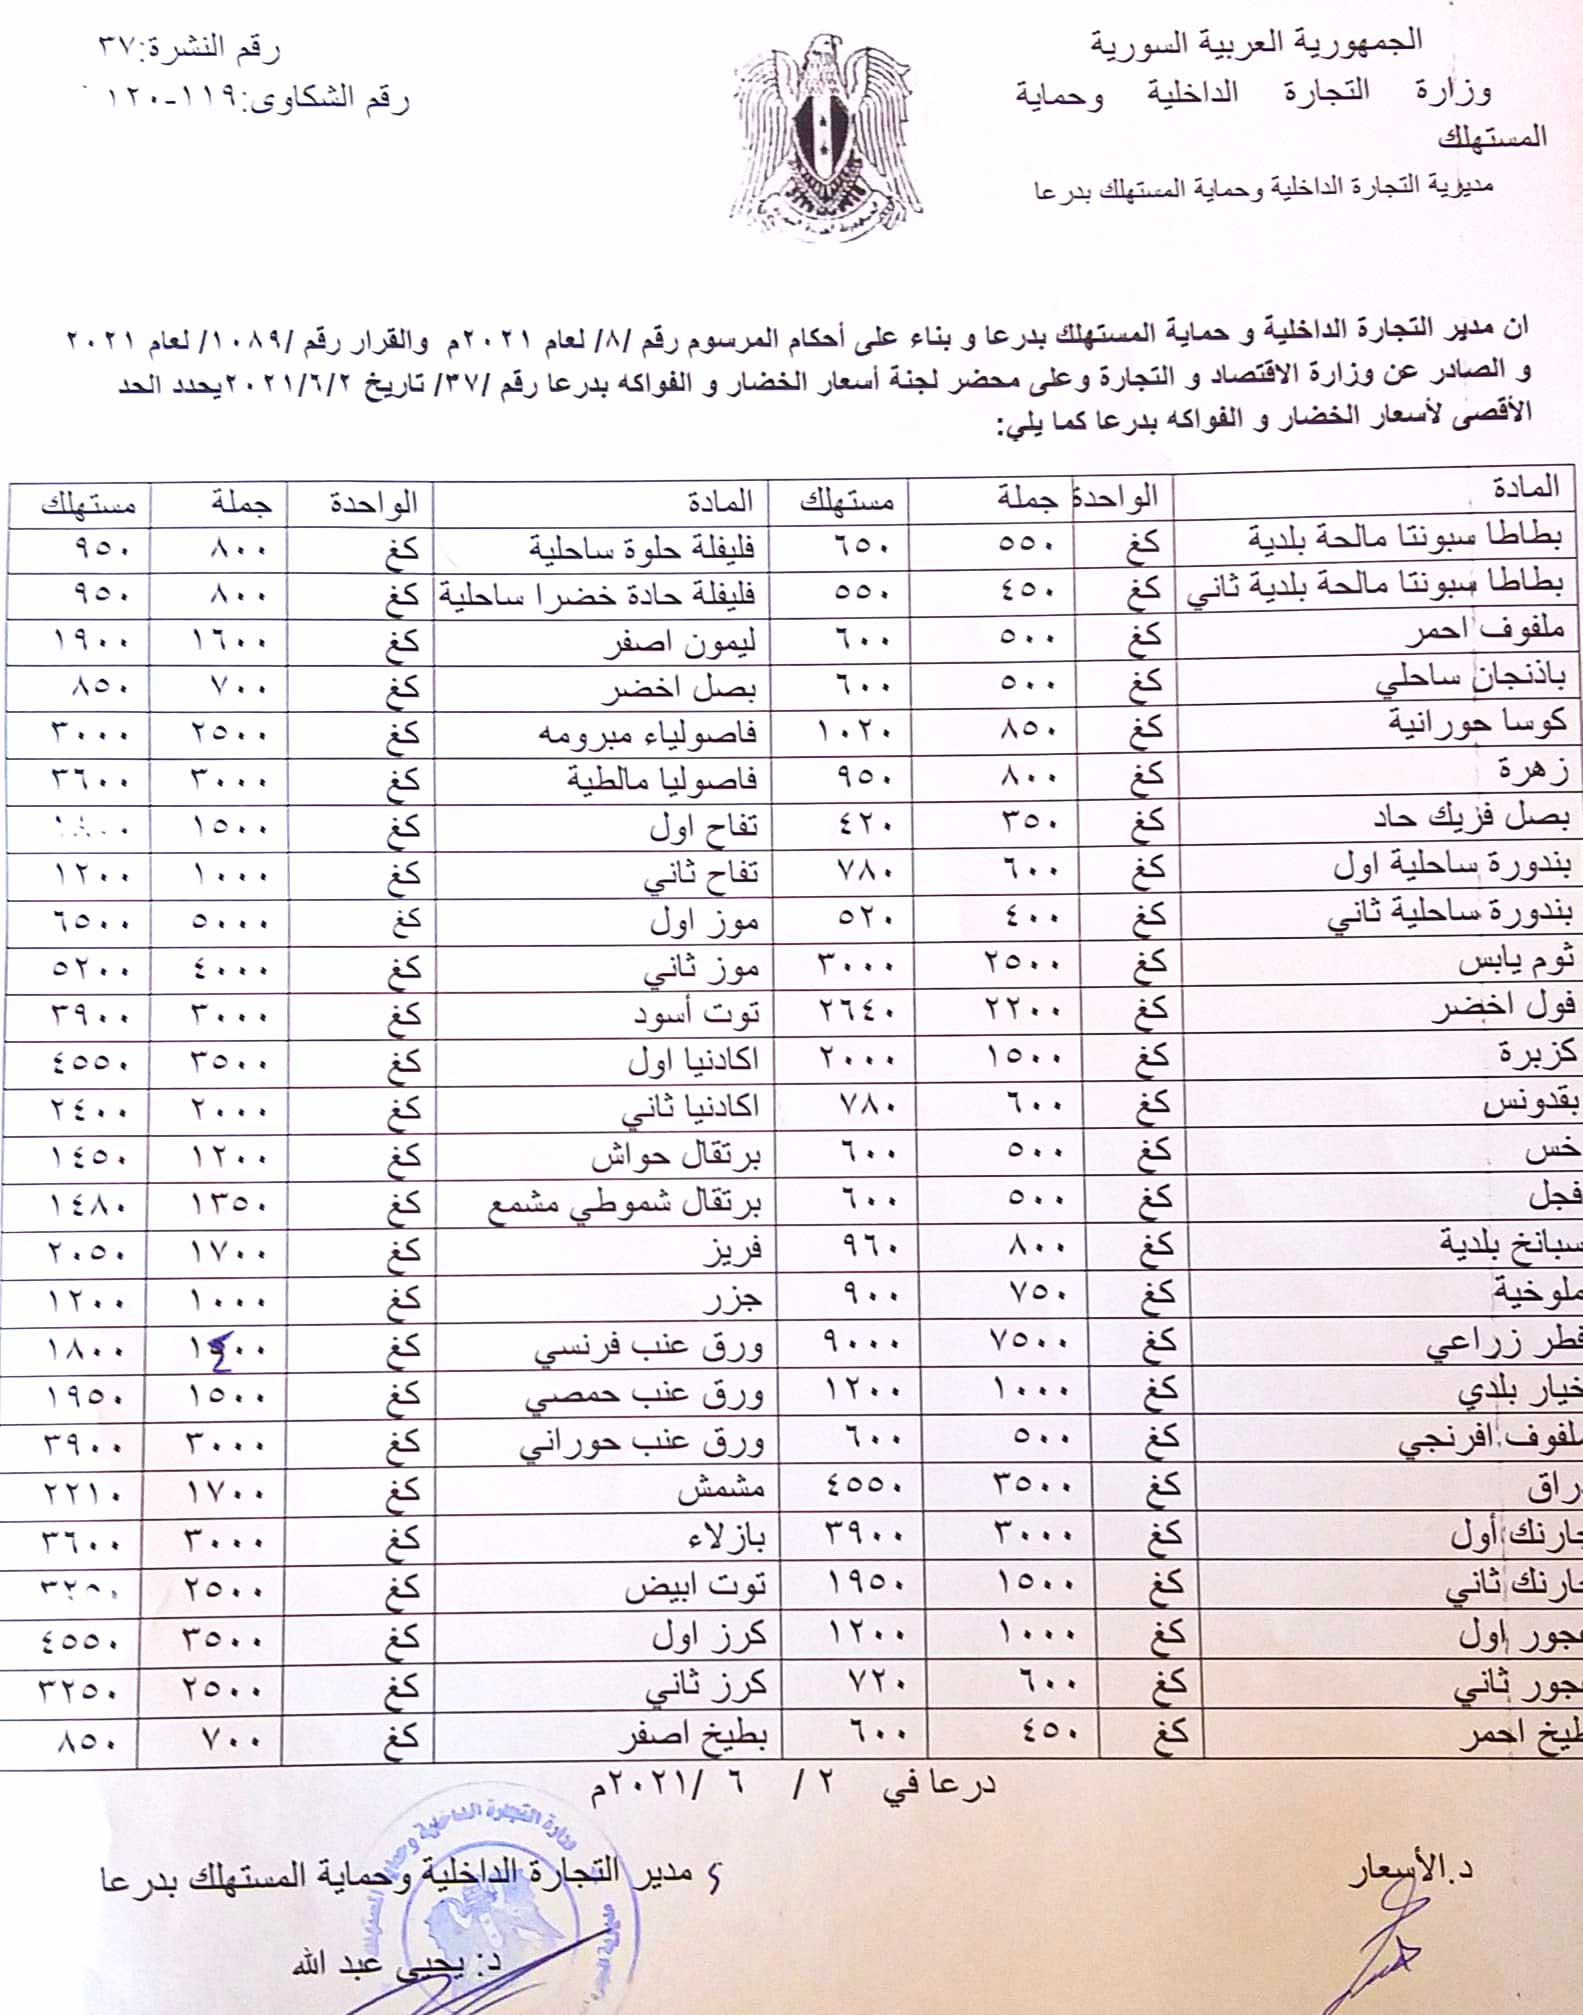  النشرة الأسبوعية لأسعار الخضروات والفواكه ومشتقات الألبان في محافظة درعا